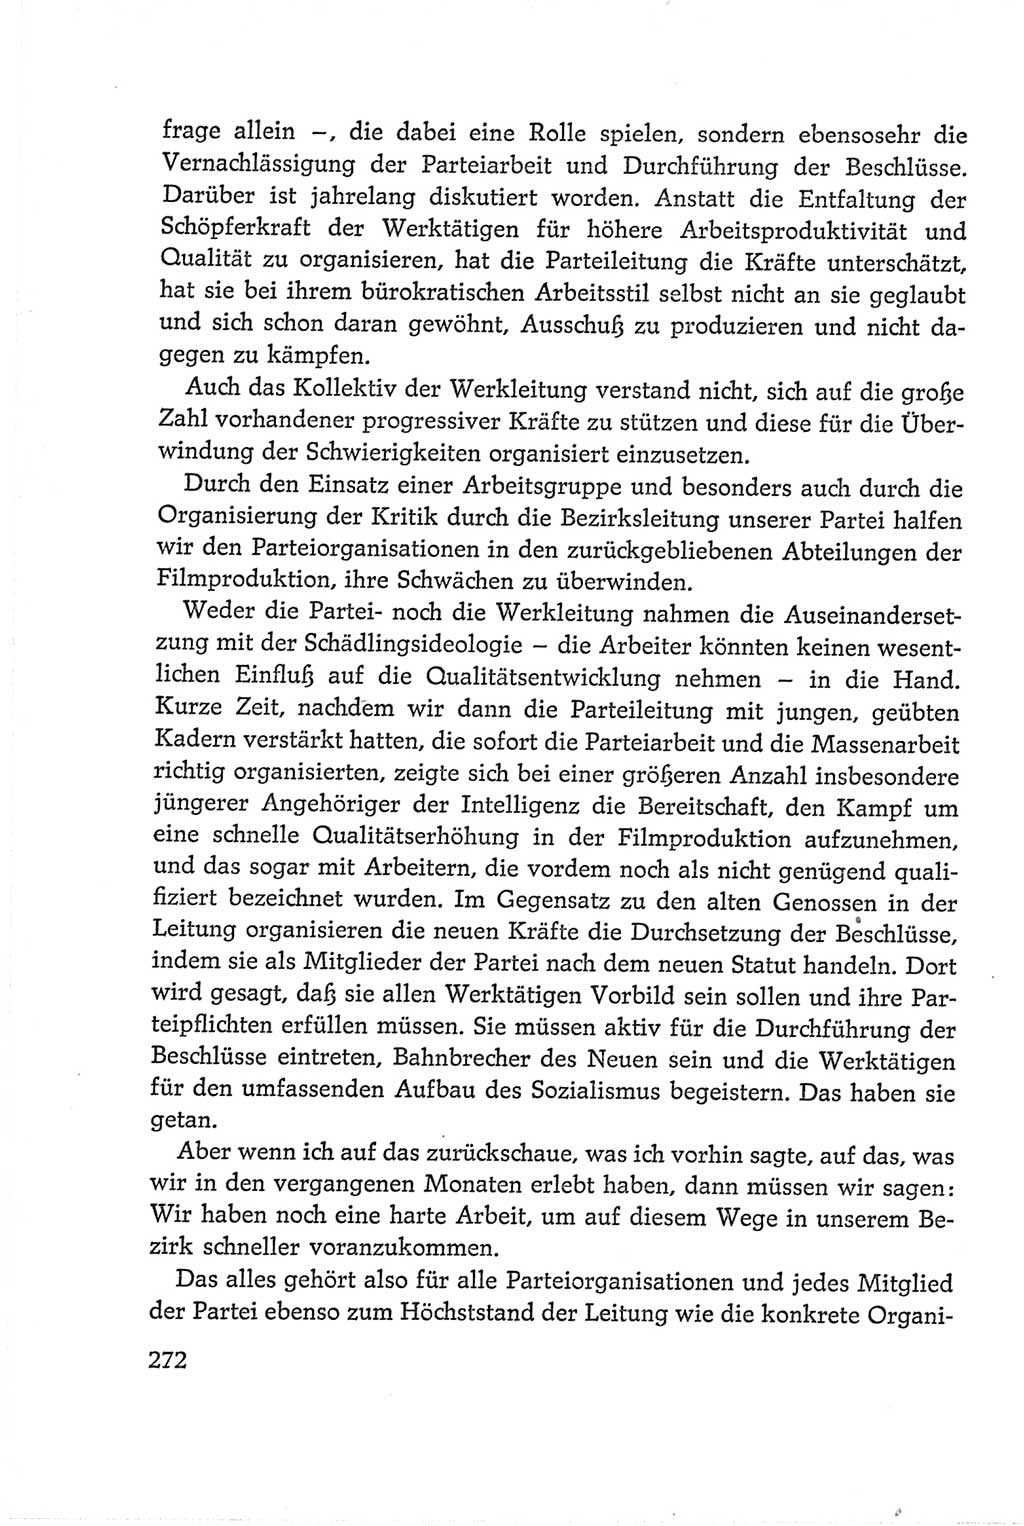 Protokoll der Verhandlungen des Ⅵ. Parteitages der Sozialistischen Einheitspartei Deutschlands (SED) [Deutsche Demokratische Republik (DDR)] 1963, Band Ⅱ, Seite 272 (Prot. Verh. Ⅵ. PT SED DDR 1963, Bd. Ⅱ, S. 272)